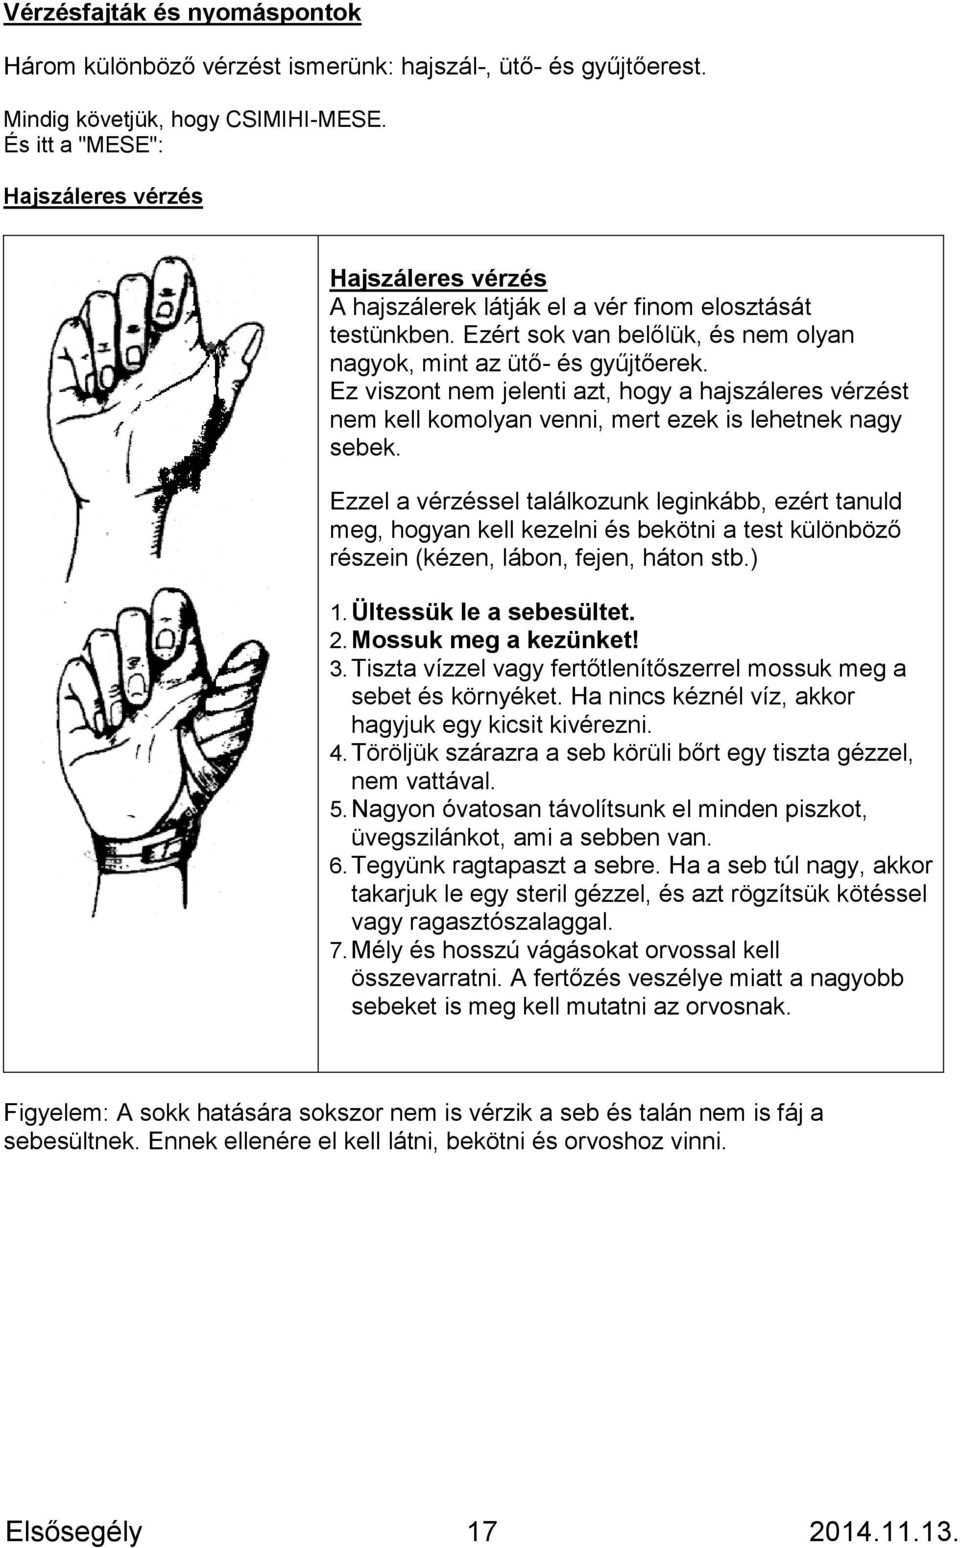 hogyan kell kezelni a körömgombát a kéznél